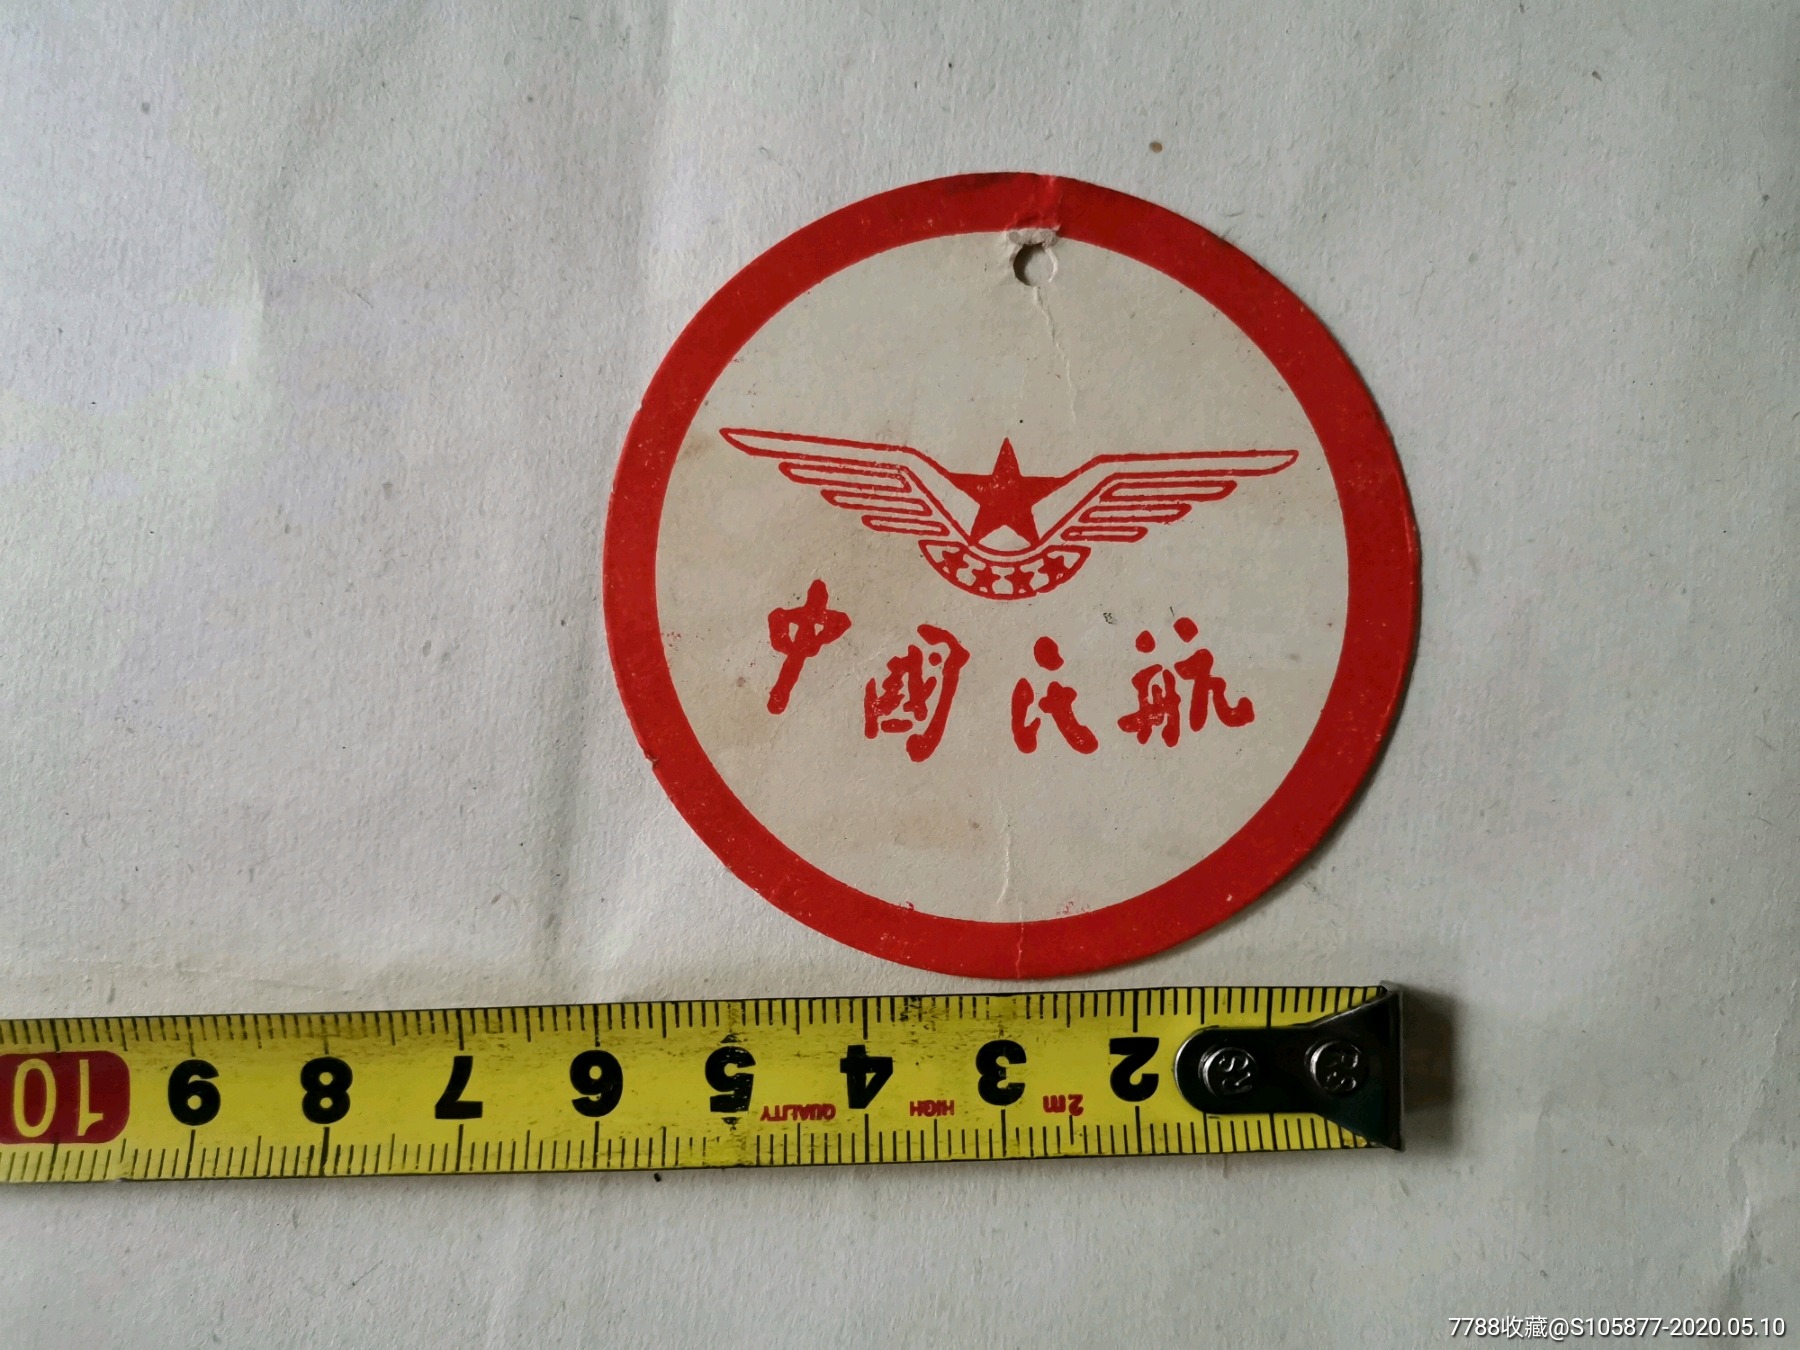 中国民航飞机上海到南昌的旅客手提物品牌一张